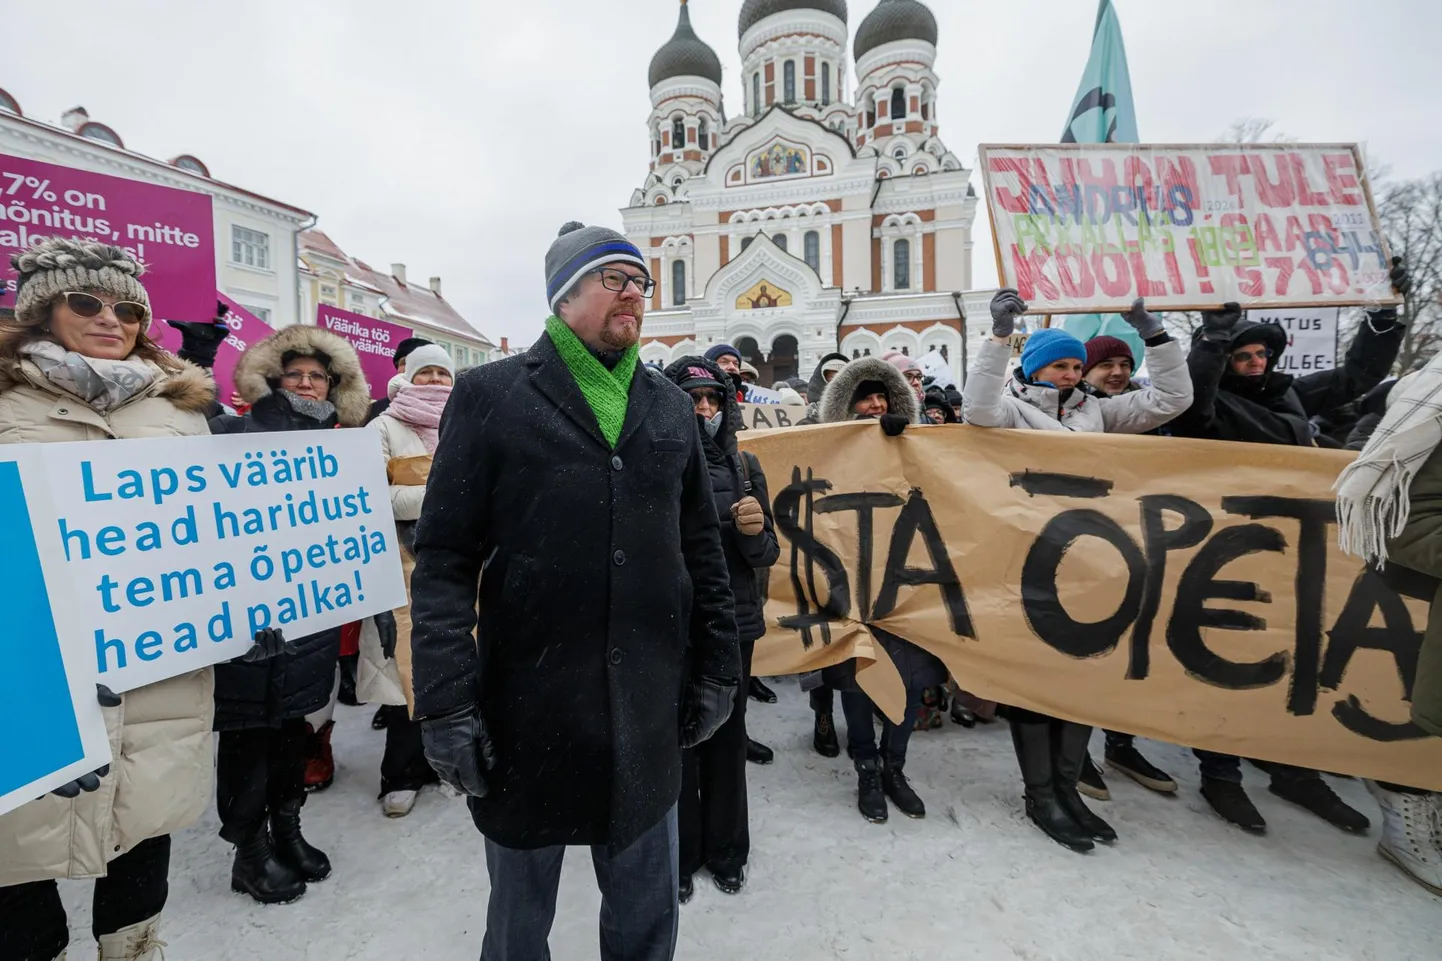 Eesti haridustöötajate liidu juht Reemo Voltri haridustöötajate meeleavaldusel.